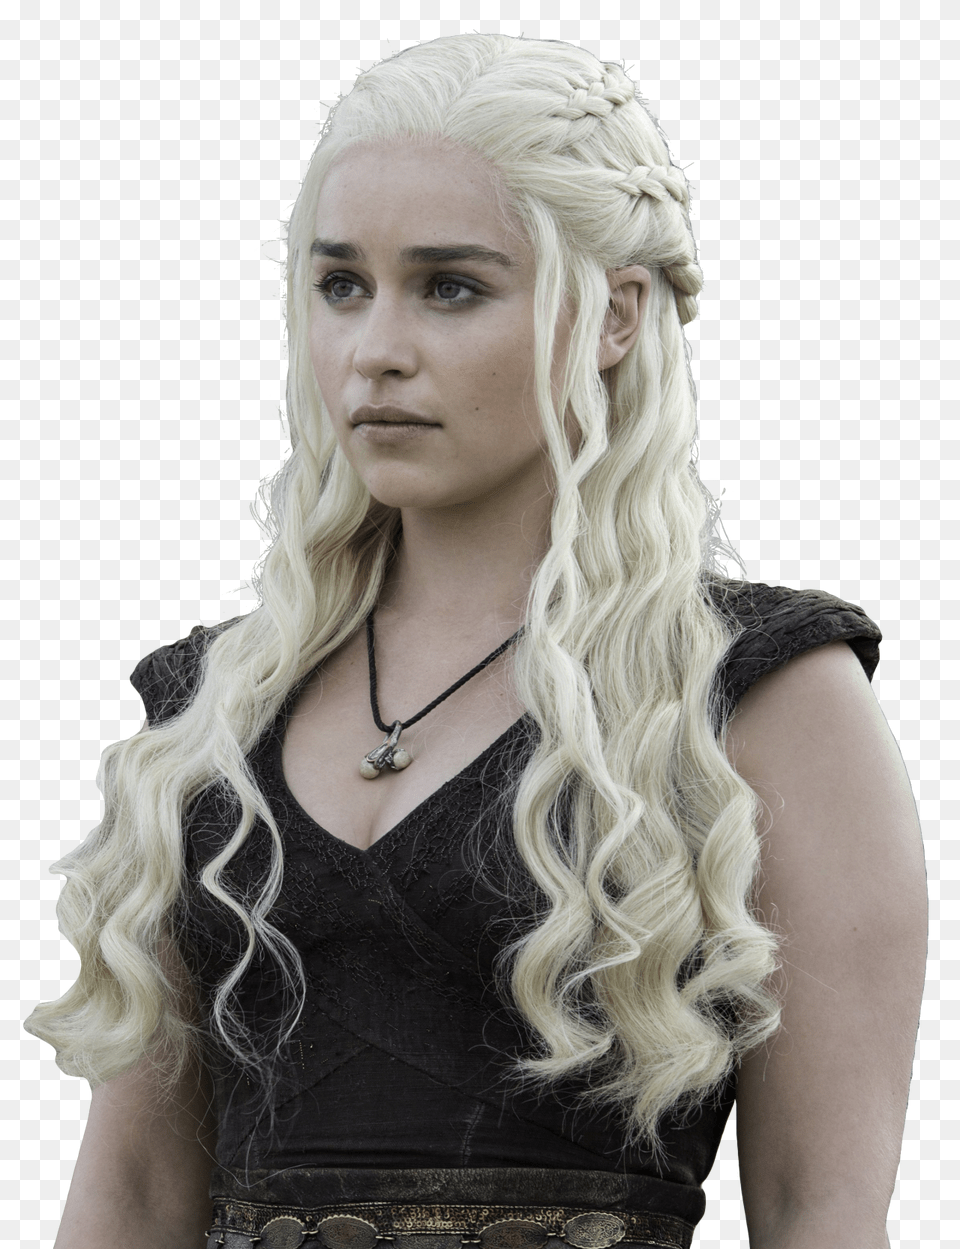 Transparent Daenerys Targaryen Game Of Thrones Daenerys, Hair, Person, Blonde, Woman Png Image